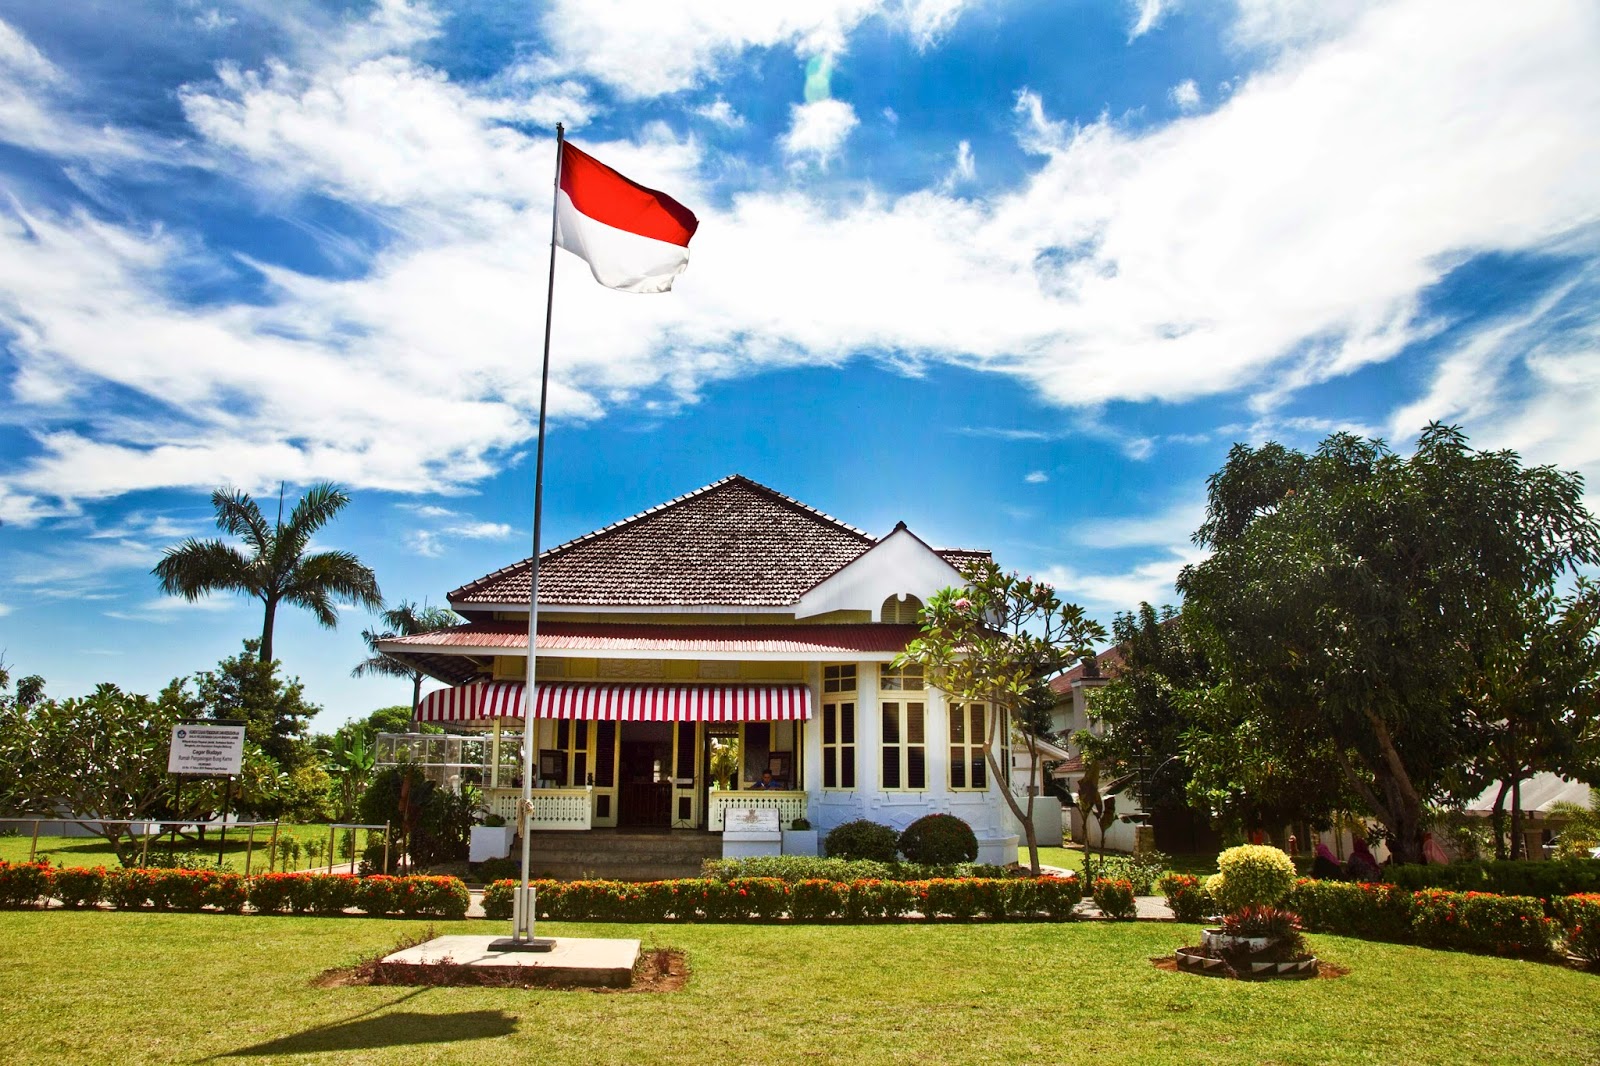 Rumah Pengasingan Bung Karno di Bengkulu : Harga Tiket, Foto, Lokasi, Fasilitas dan Spot